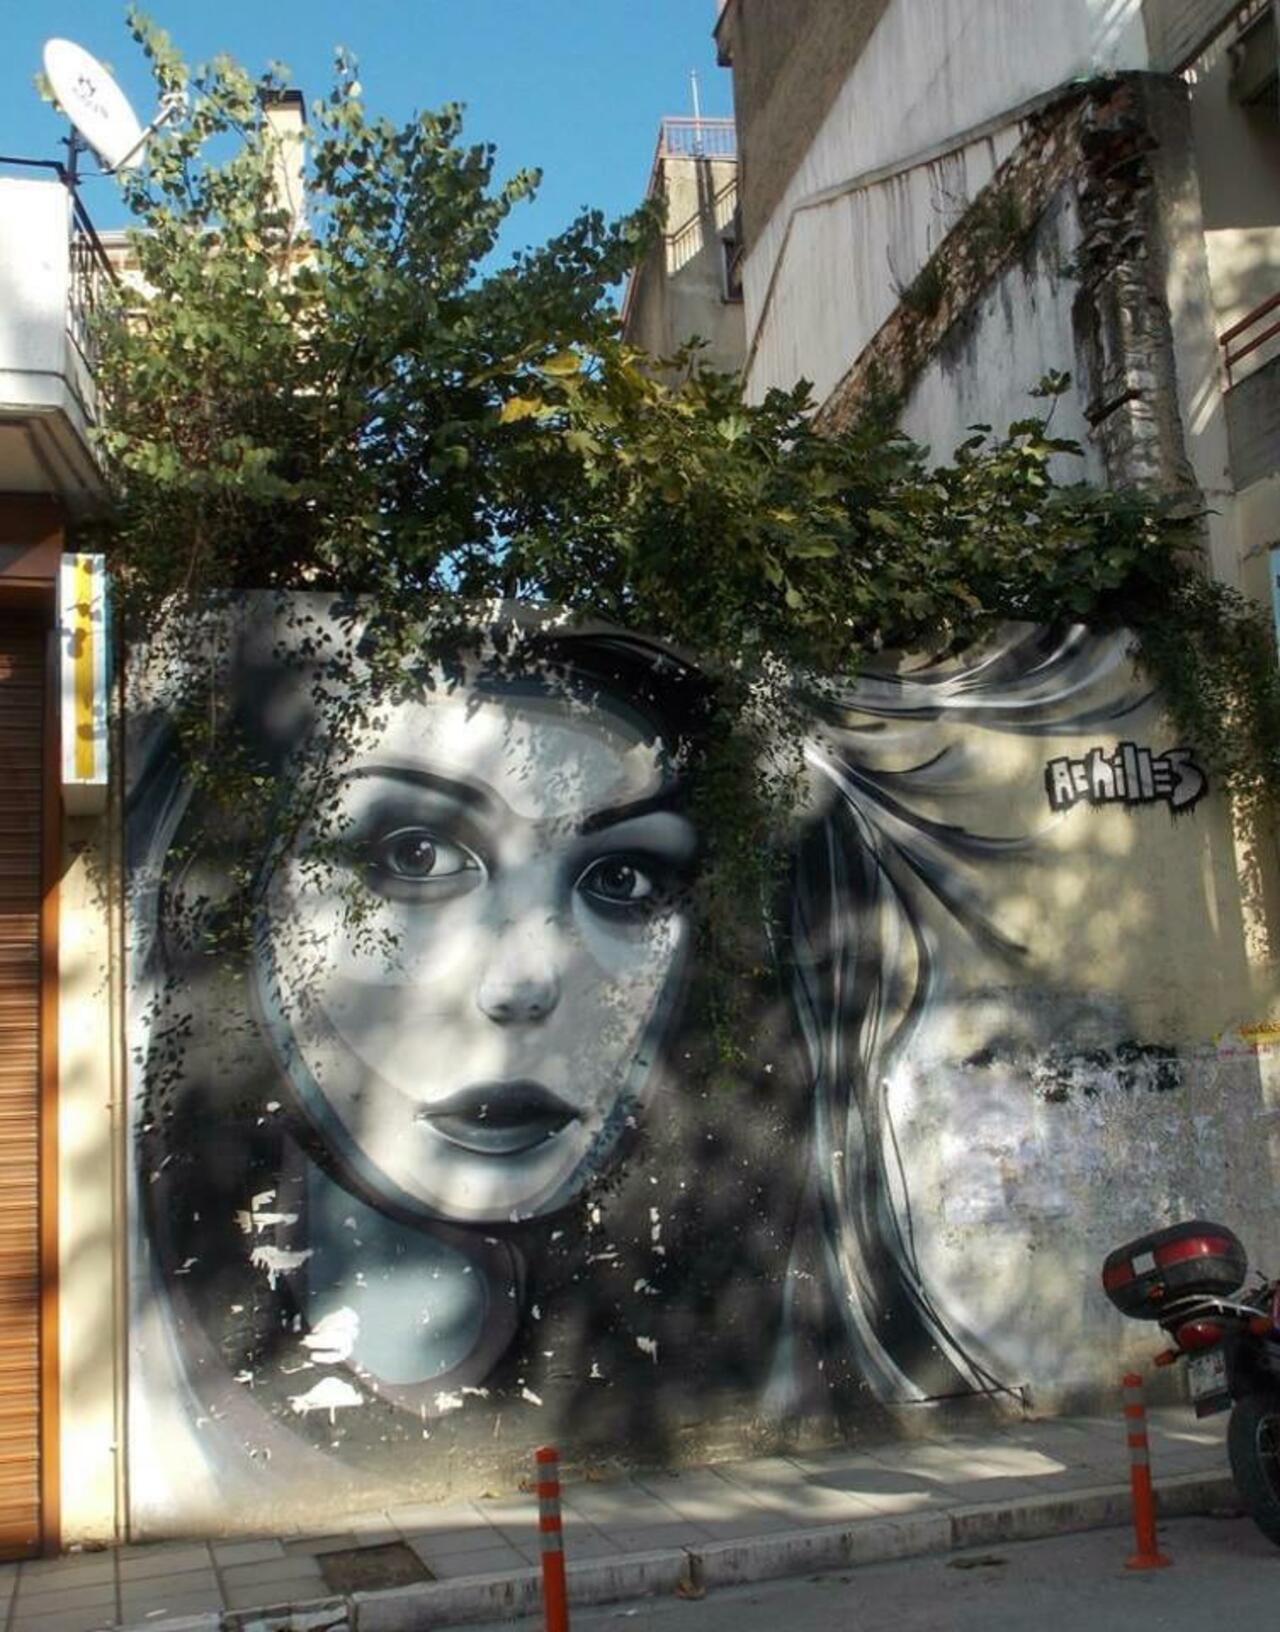 When Street Art meets nature by the artist Achilles 

#art #arte #graffiti #streetart http://t.co/uSPeOHEhZc